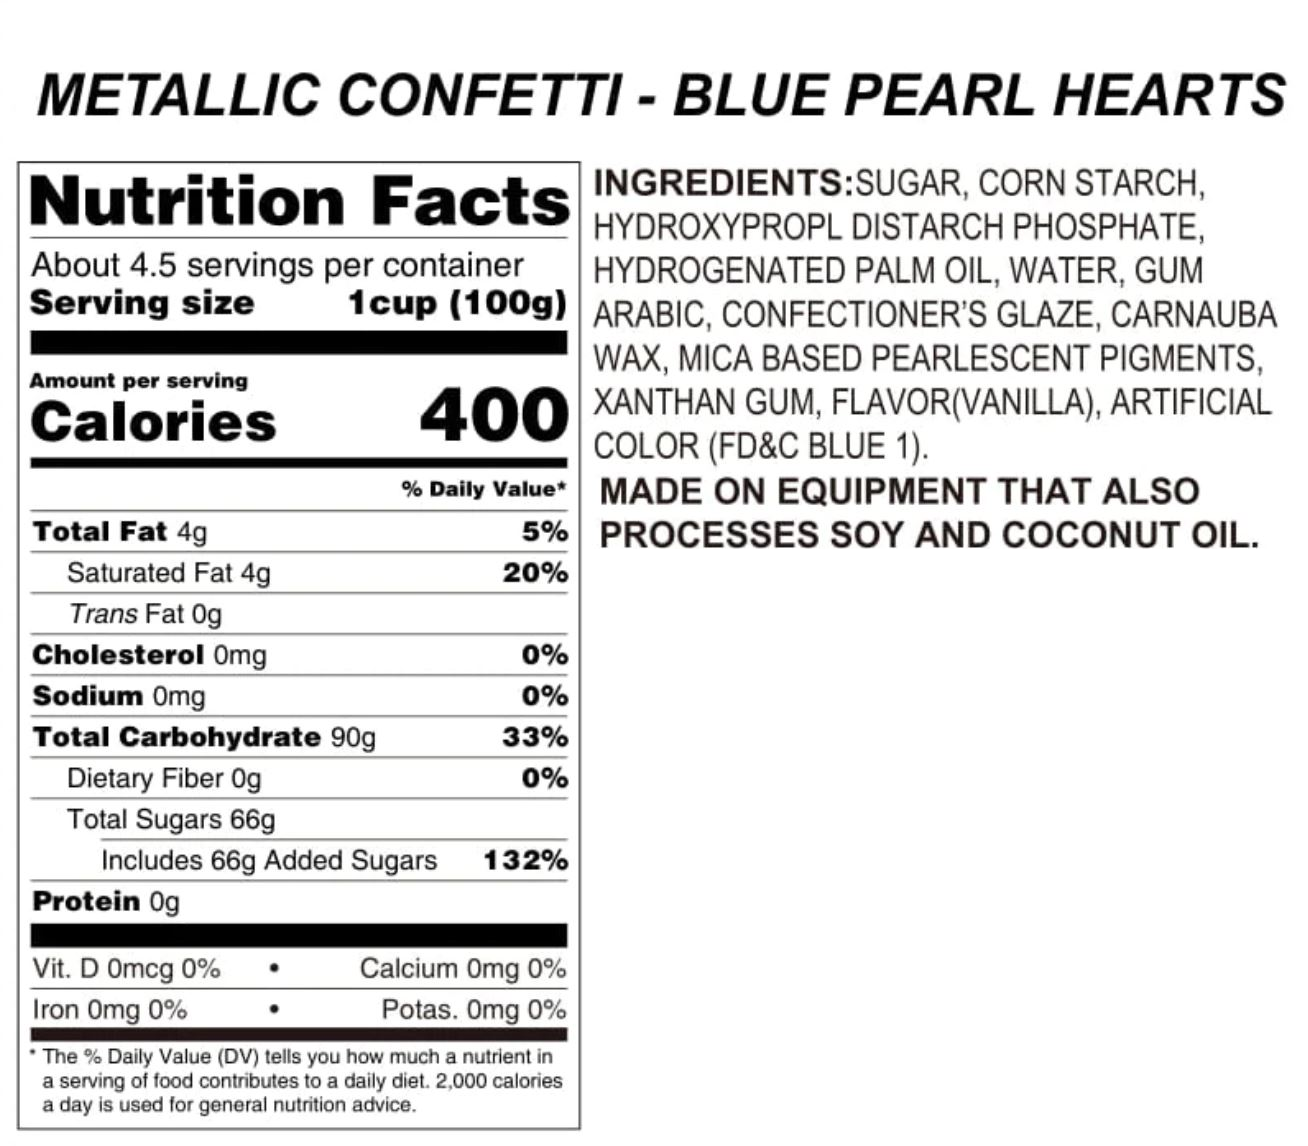 Blue Pearl Hearts Metallic Confetti